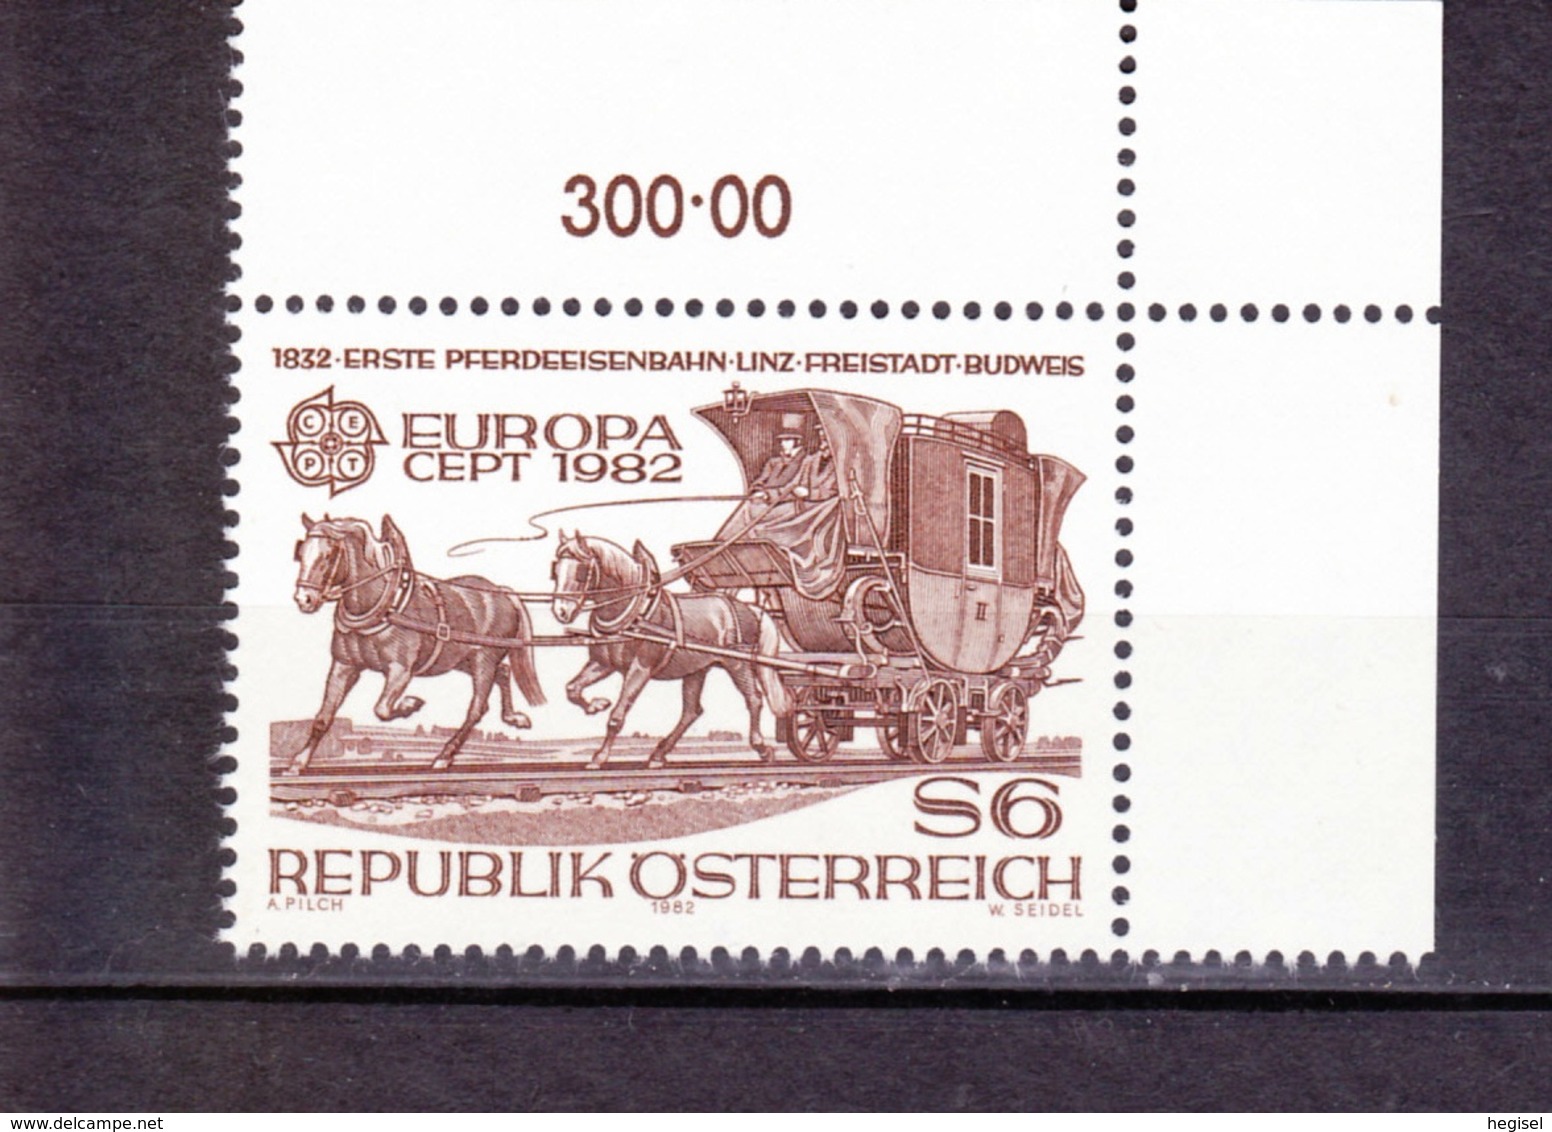 1982  Republik Österreich, CEPT - Europamarke, Pferdeeisenbahn Linz - Budweis, Postfrisch - 1982